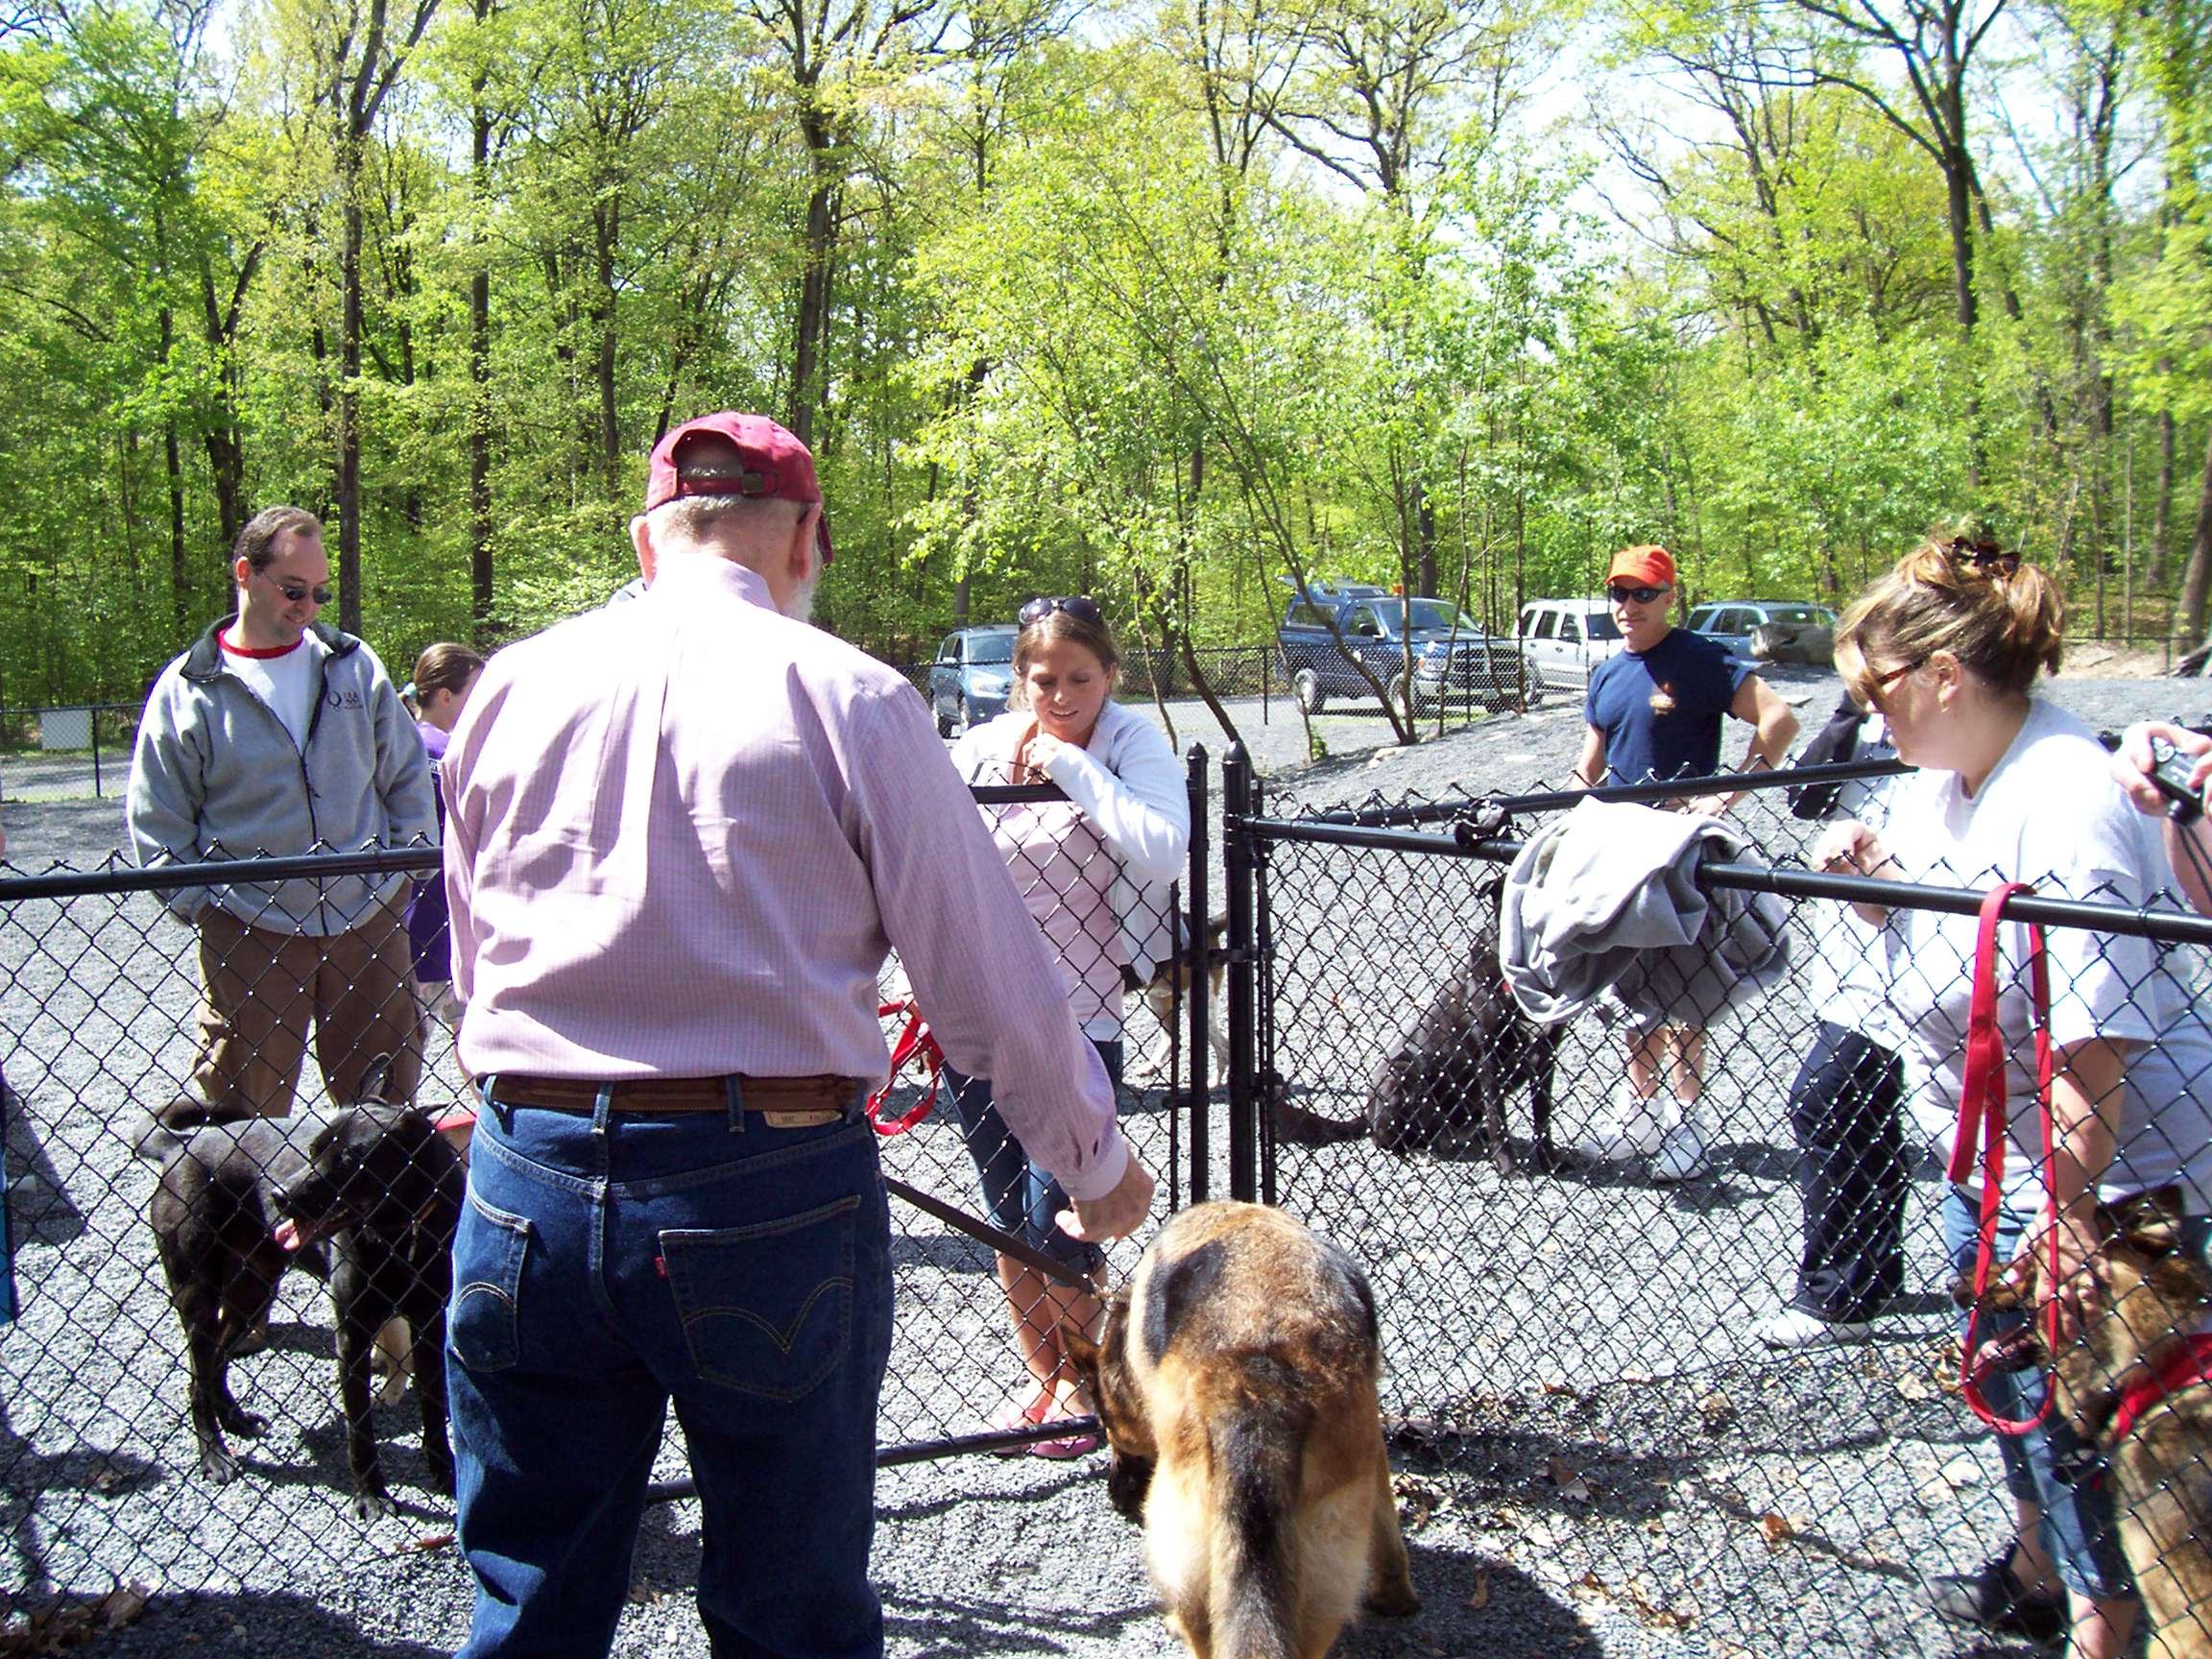 Pet Friendly Dog Park at Smith's Clove Park